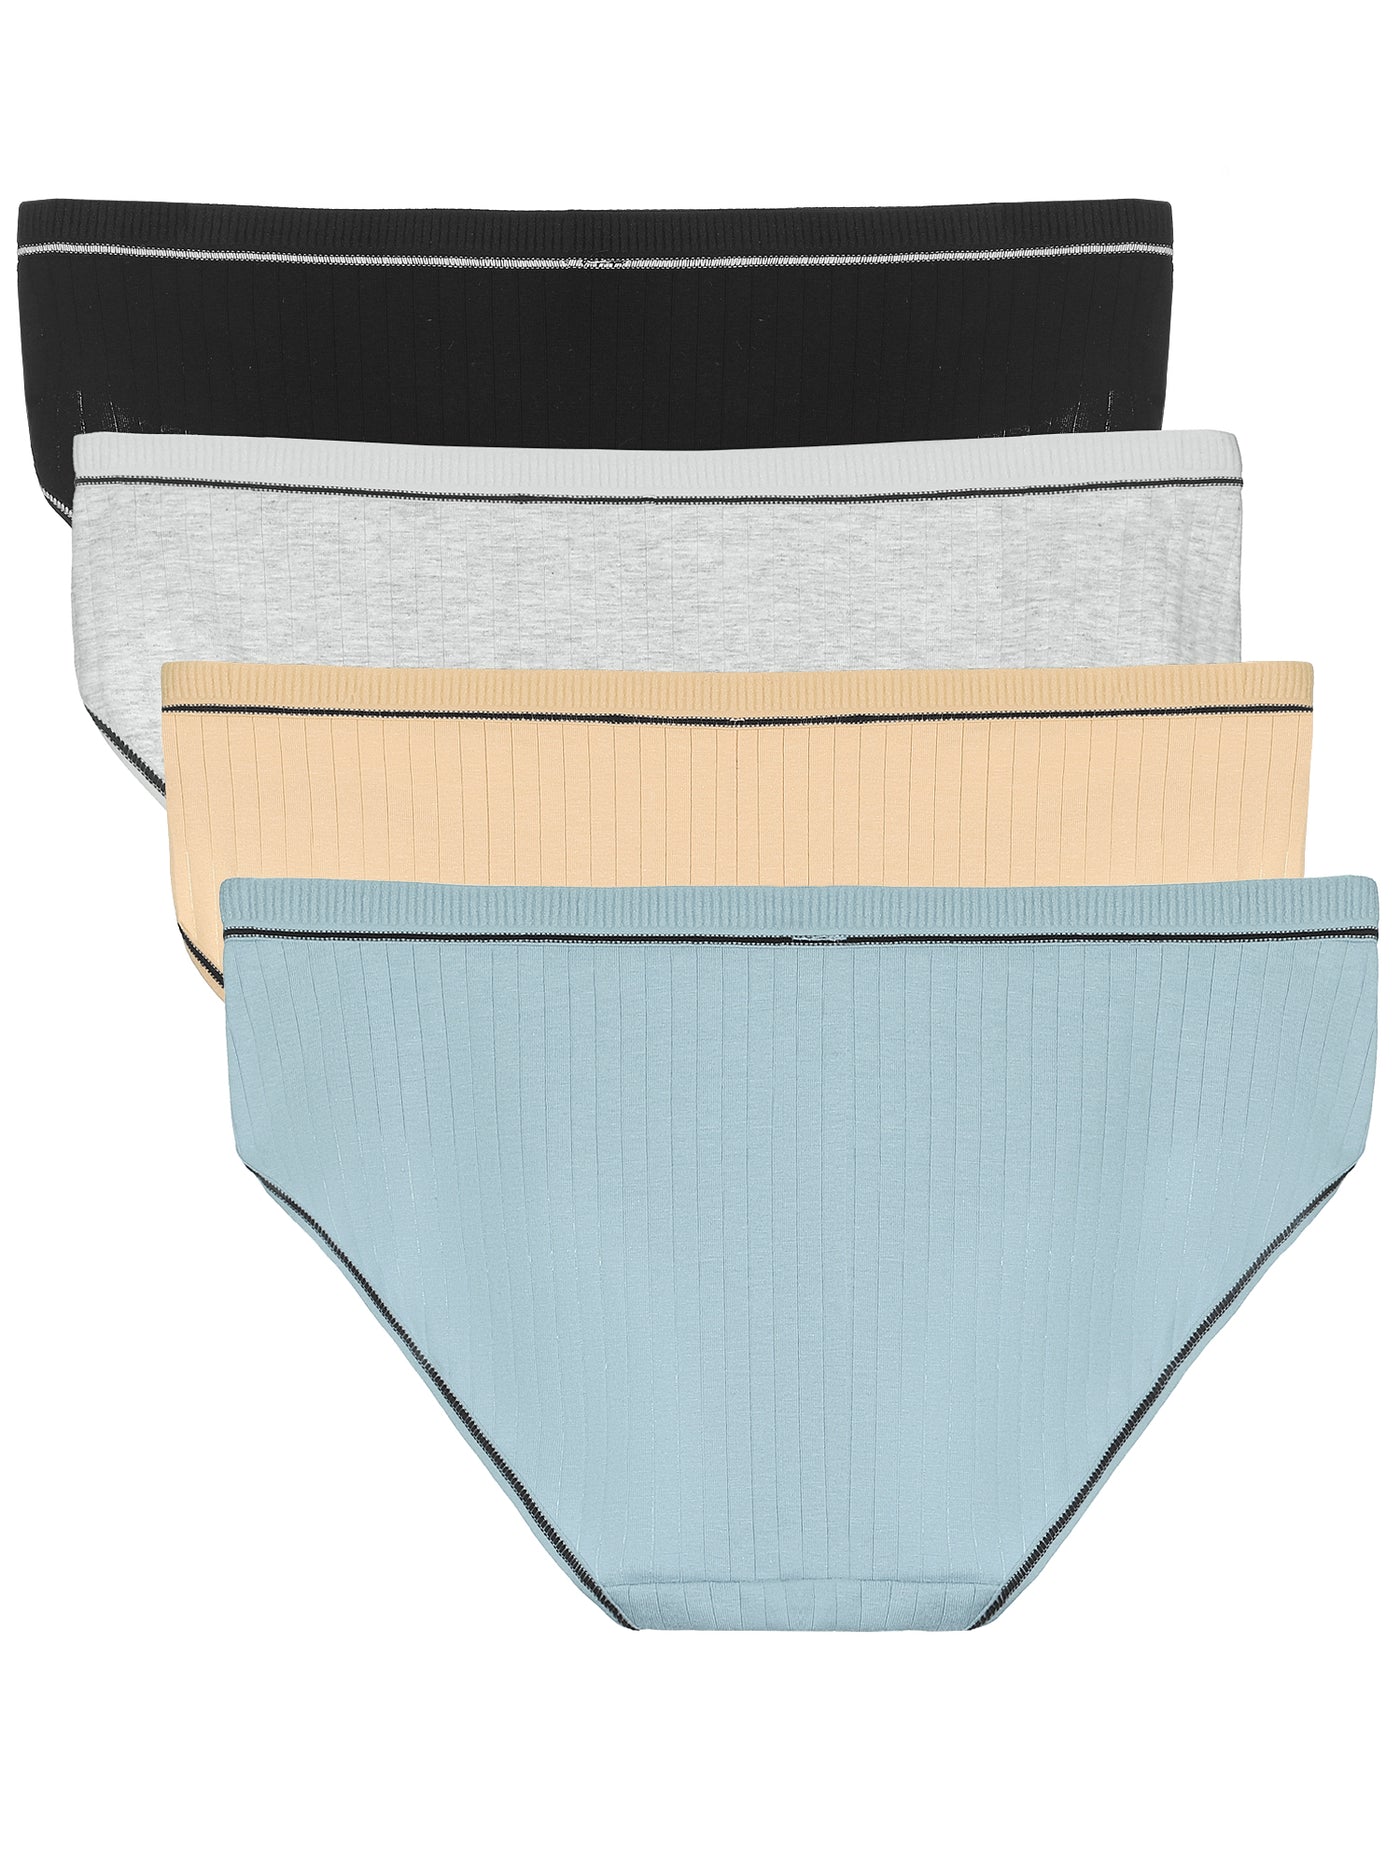 Bublédon Women's Plus Size Lingerie Cotton Hipster Briefs 3 Pack Panties